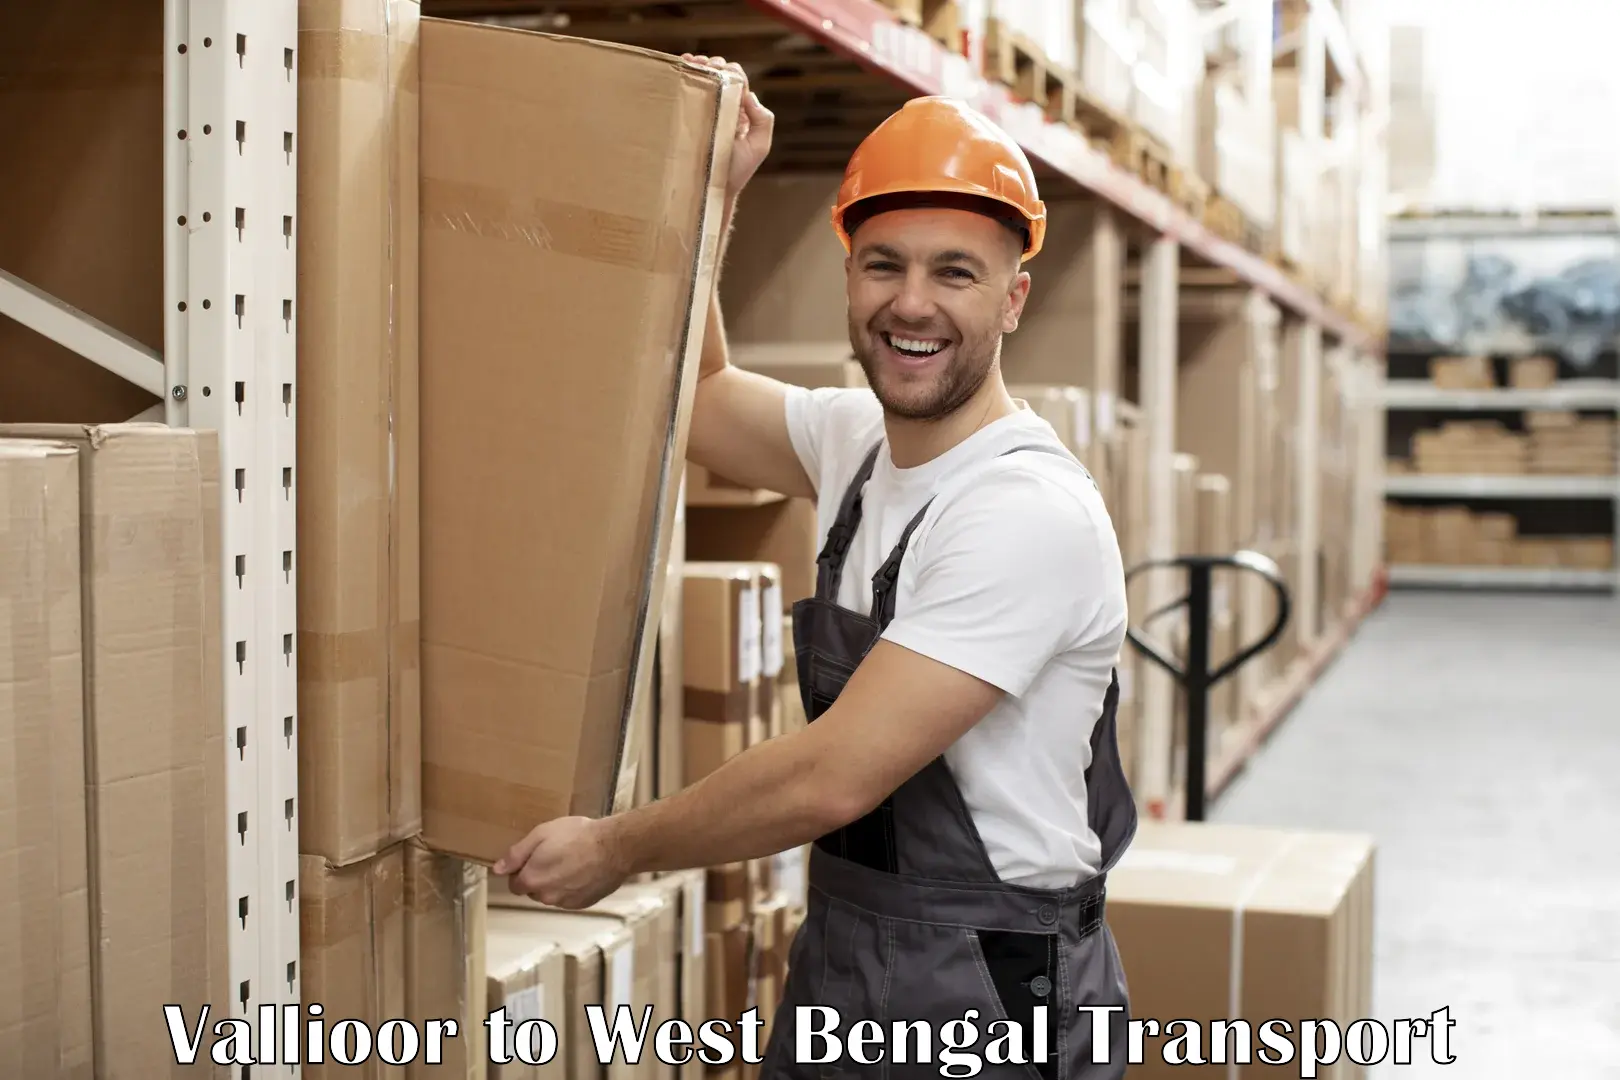 Sending bike to another city Vallioor to West Bengal